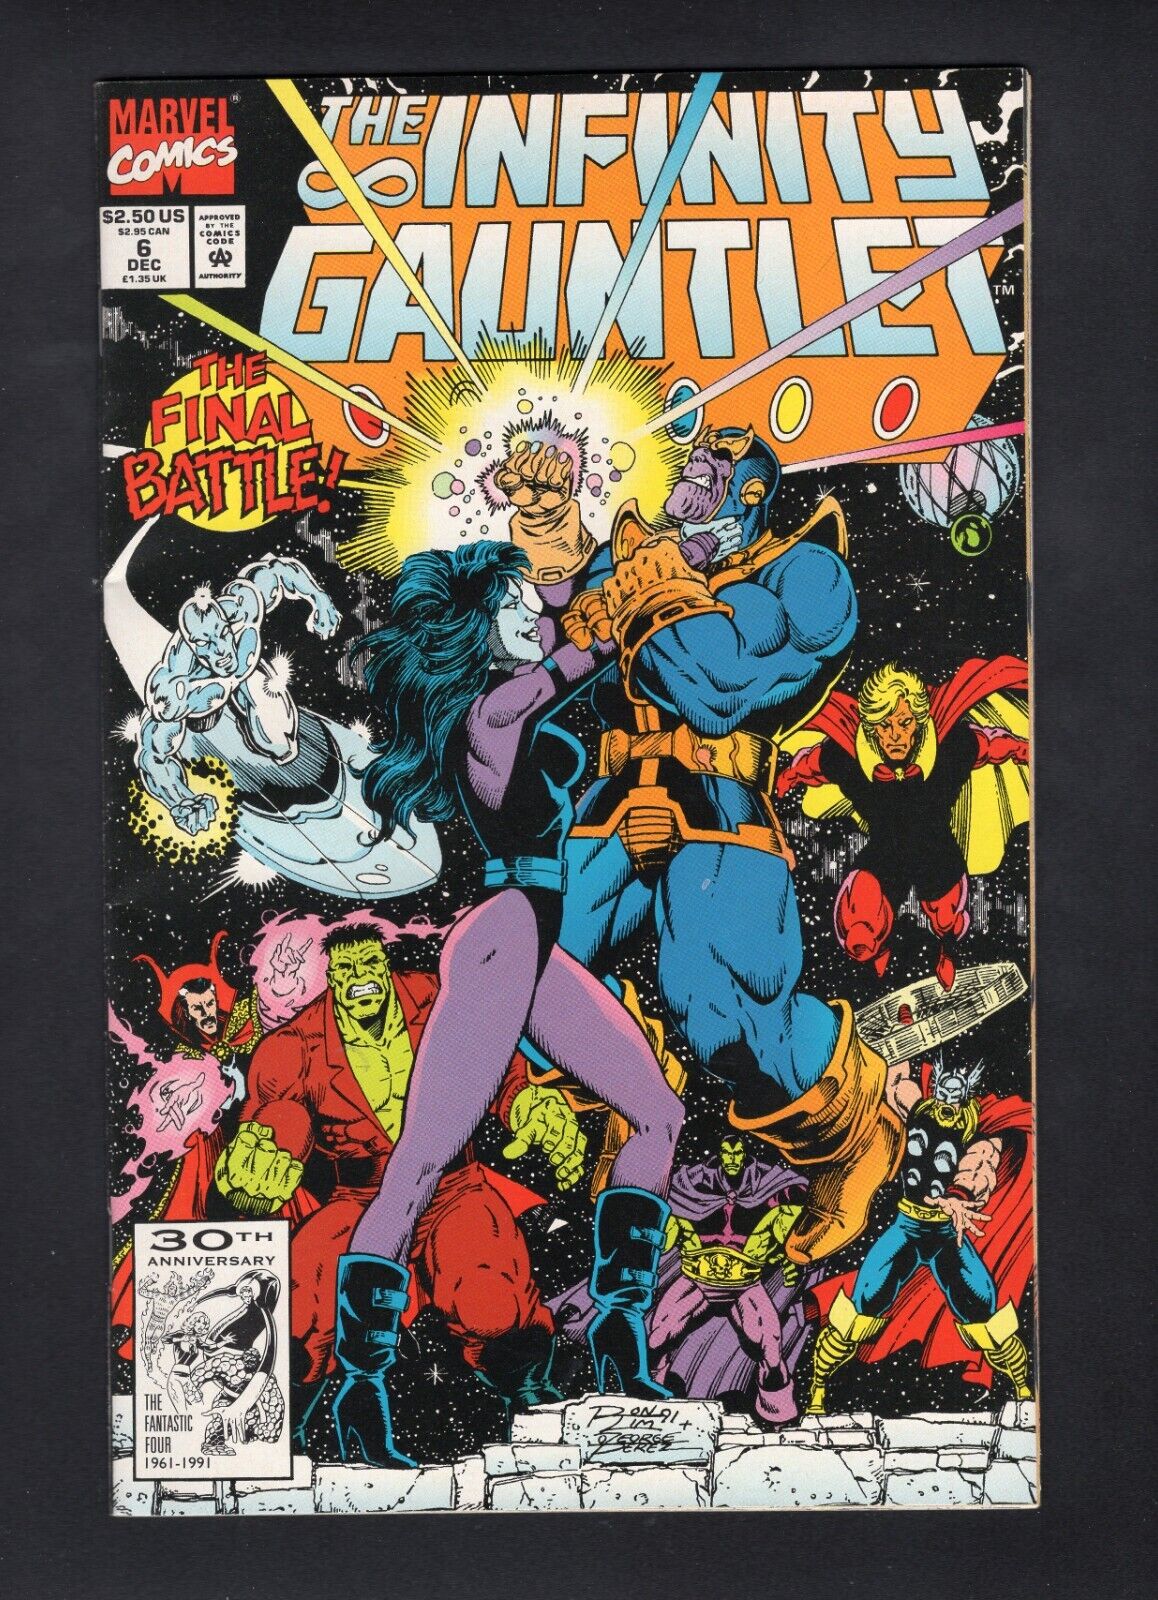 Infinity Gauntlet #6 Vol. 1 Direct Adam Warlock gets Gauntlet Marvel Comics \'91